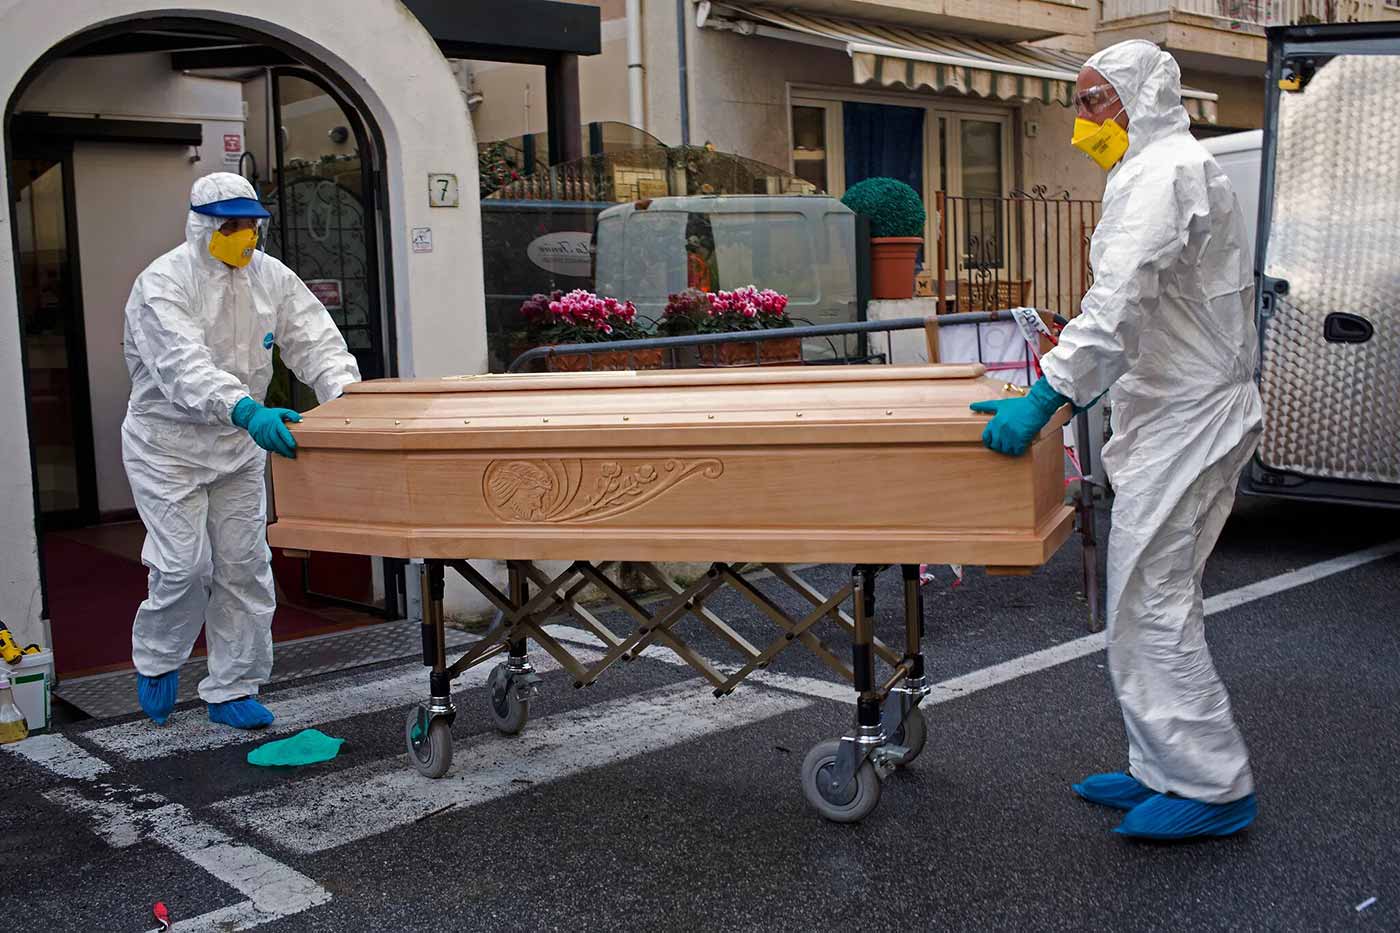 إيطاليا تتجاوز عتبة 100 ألف وفاة بفيروس كورونا